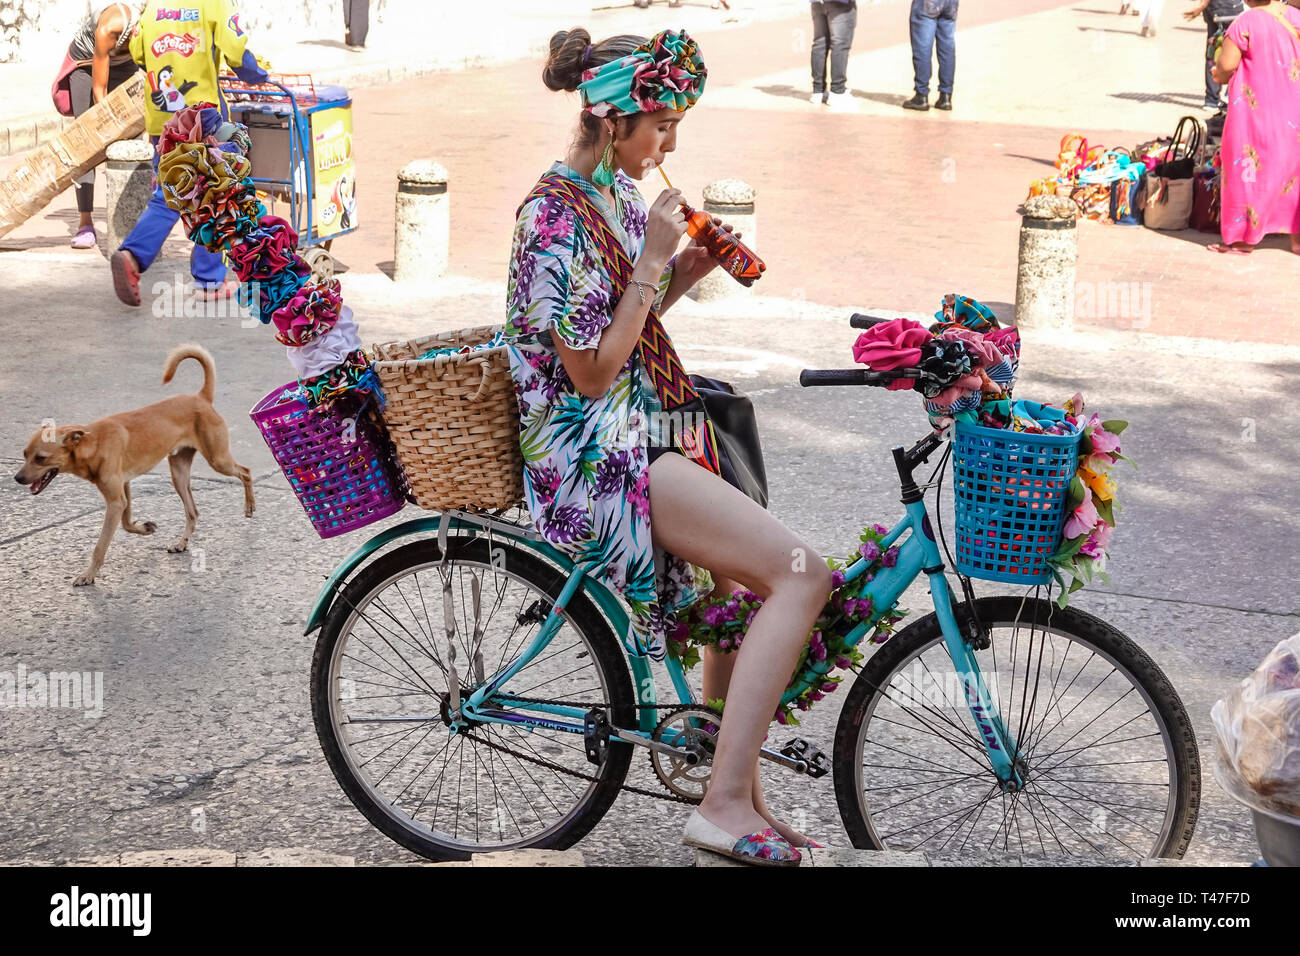 Cartagena Colombia,Negro,Palenquera Afro Caribeña,mujeres femeninas,vendedor de frutas,traje tradicional,símbolo de herencia cultural,reside étnica hispana Foto de stock